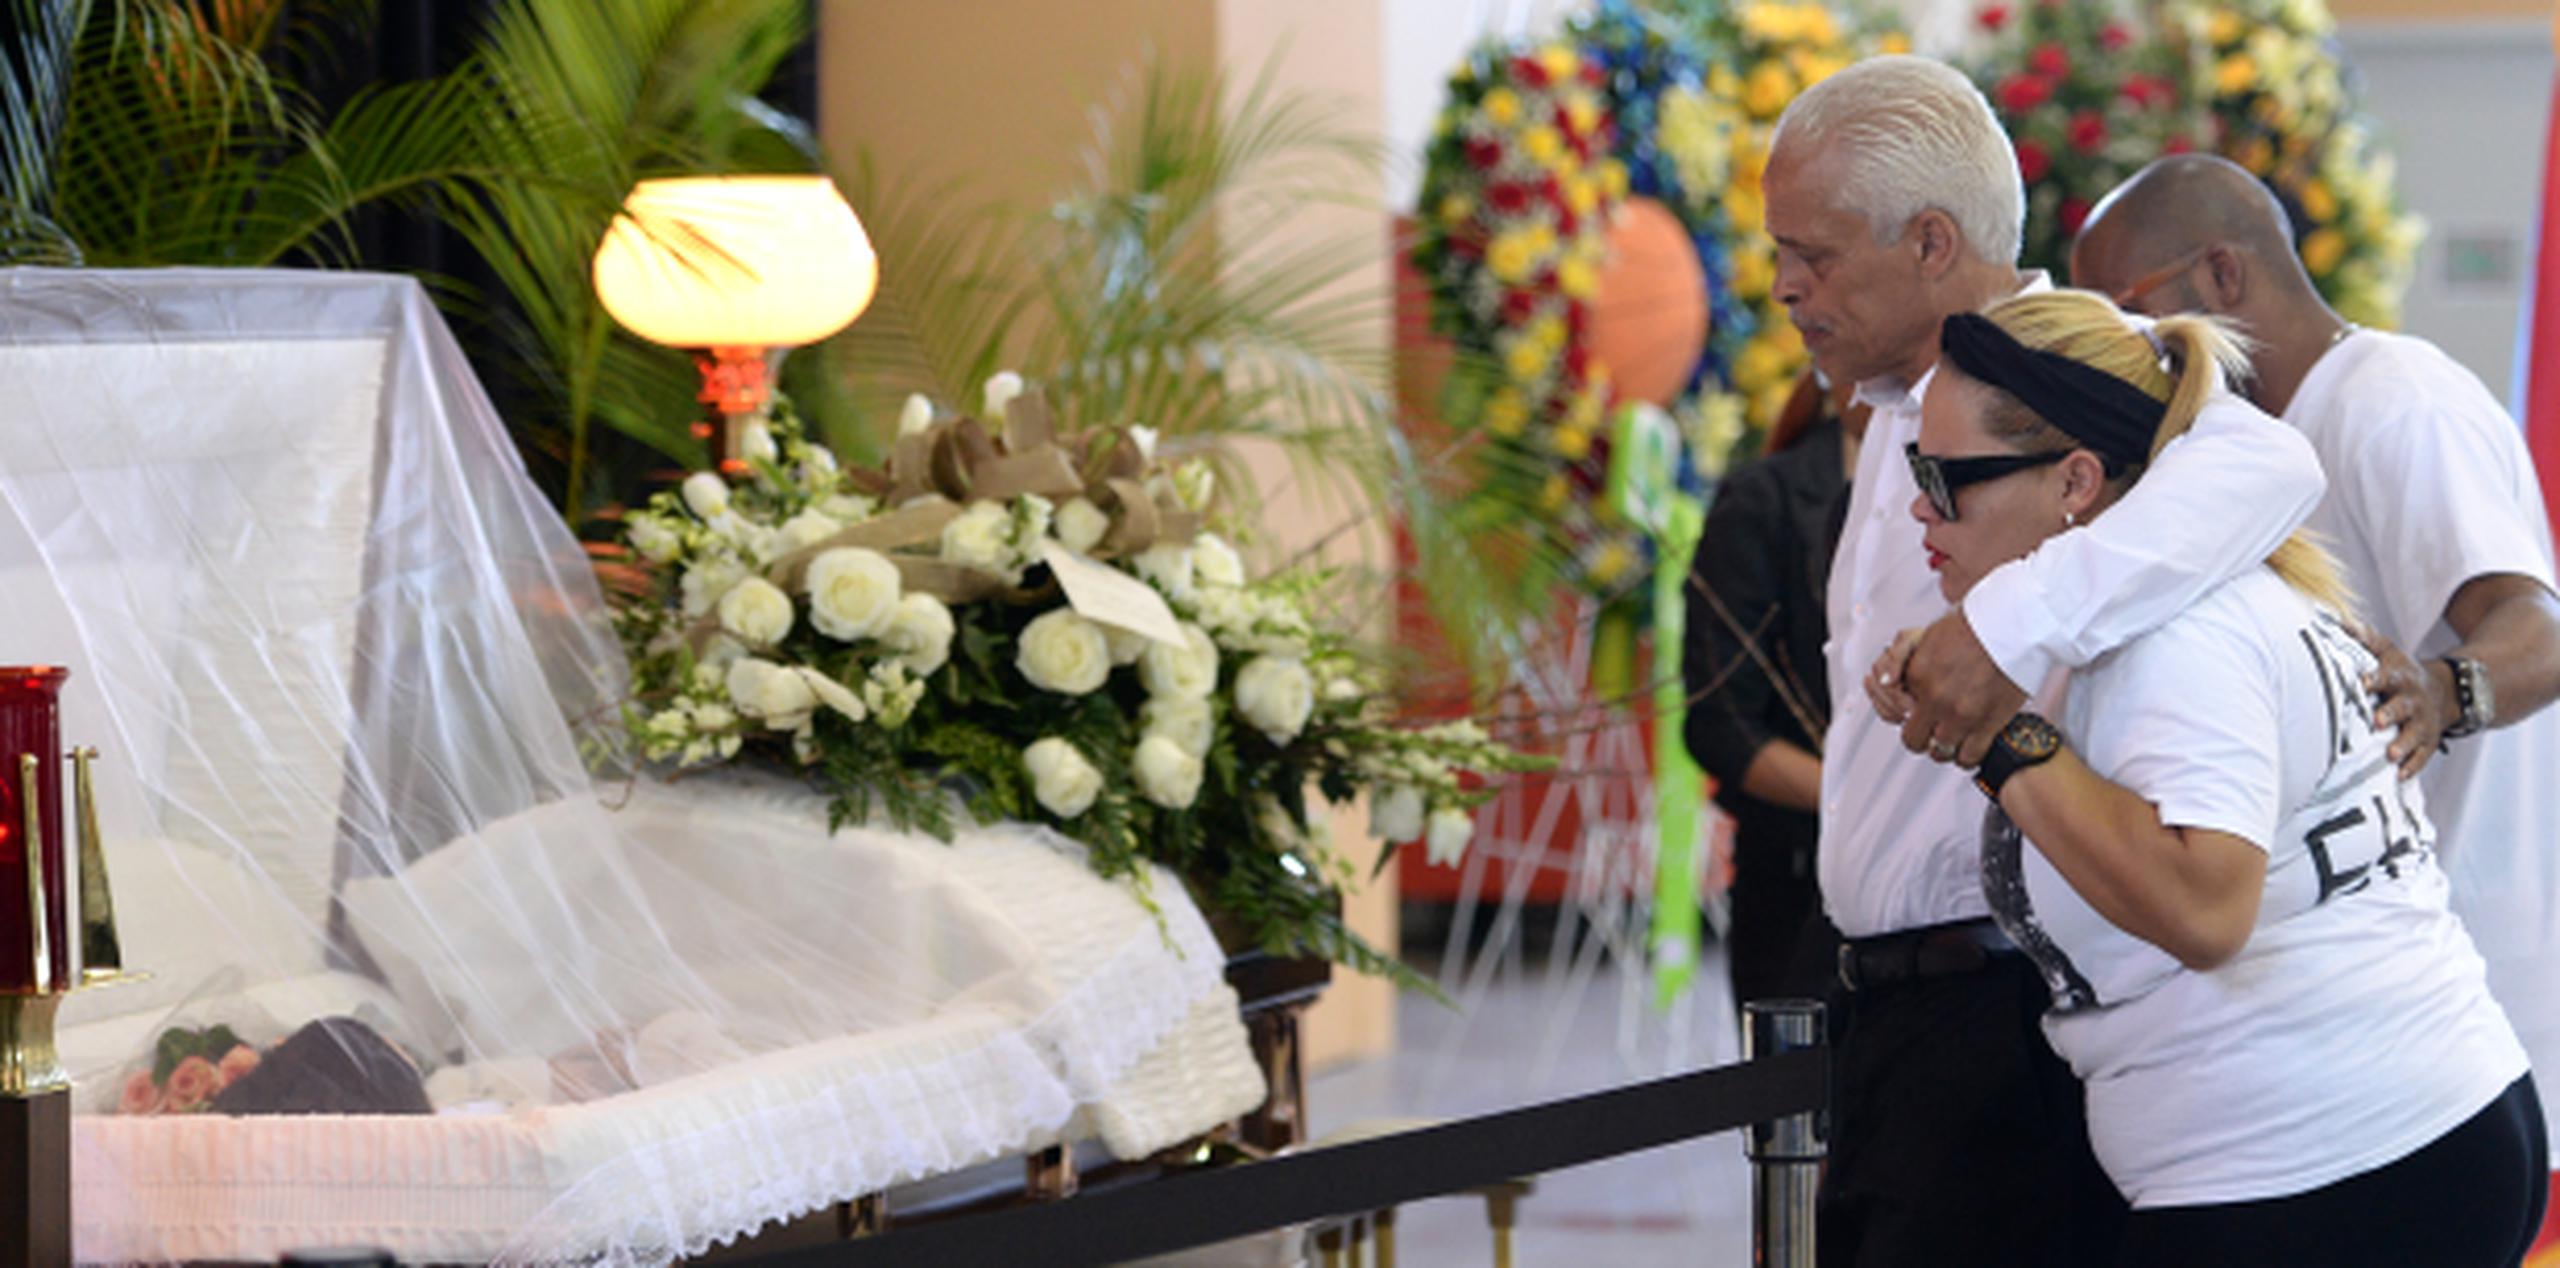 Andrés Ortiz y Carmen Nydia Colón, padres del fallecido Andrés "Corky" Ortiz, se acercan al féretro con los restos de su hijo. (andre.kang@gfrmedia.com)